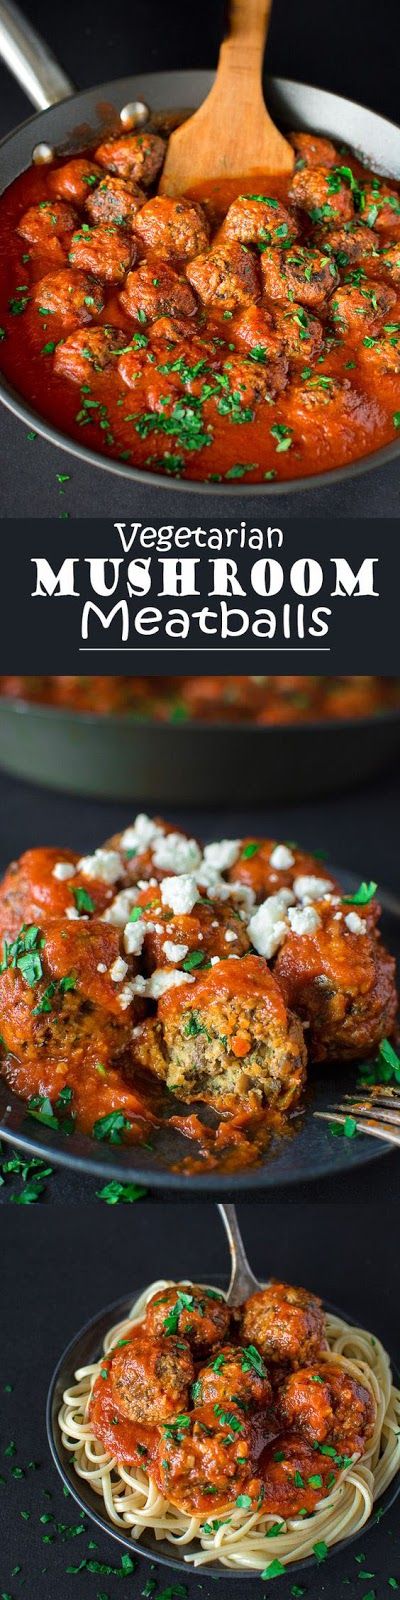 Vegetarian Mushroom Meatballs Recipes